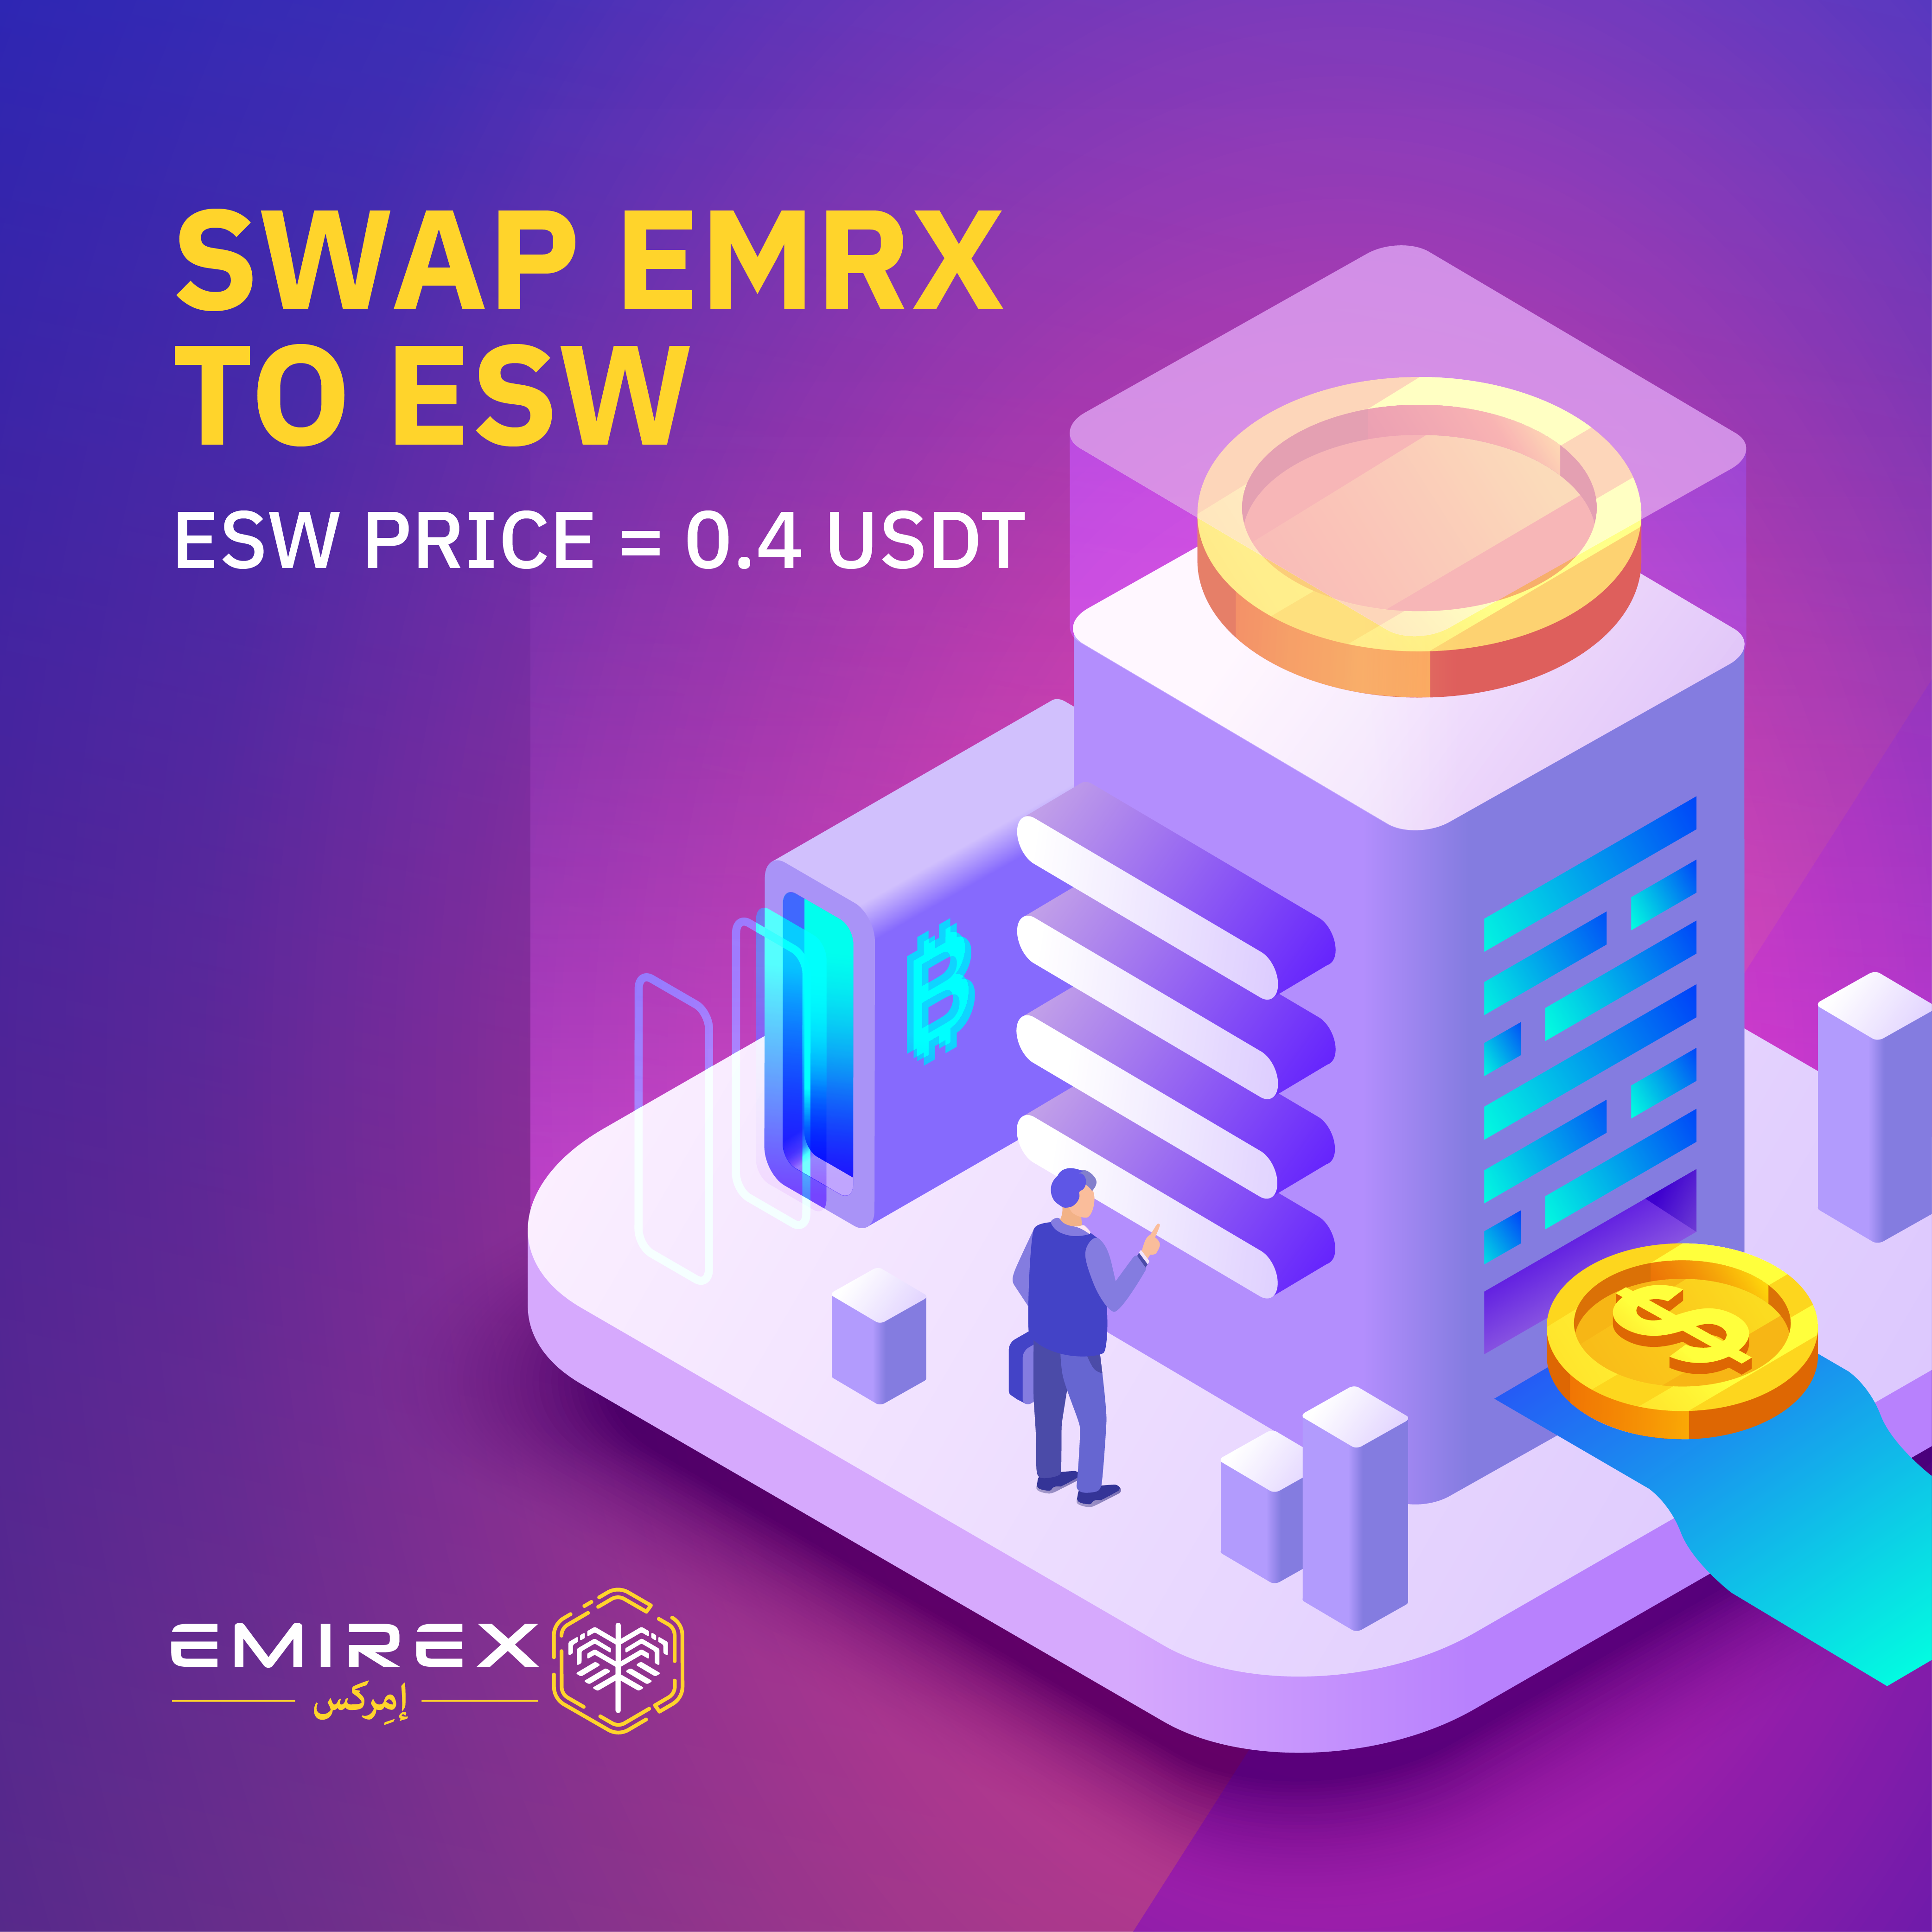 EMRX to ESW SWAP step by step guide